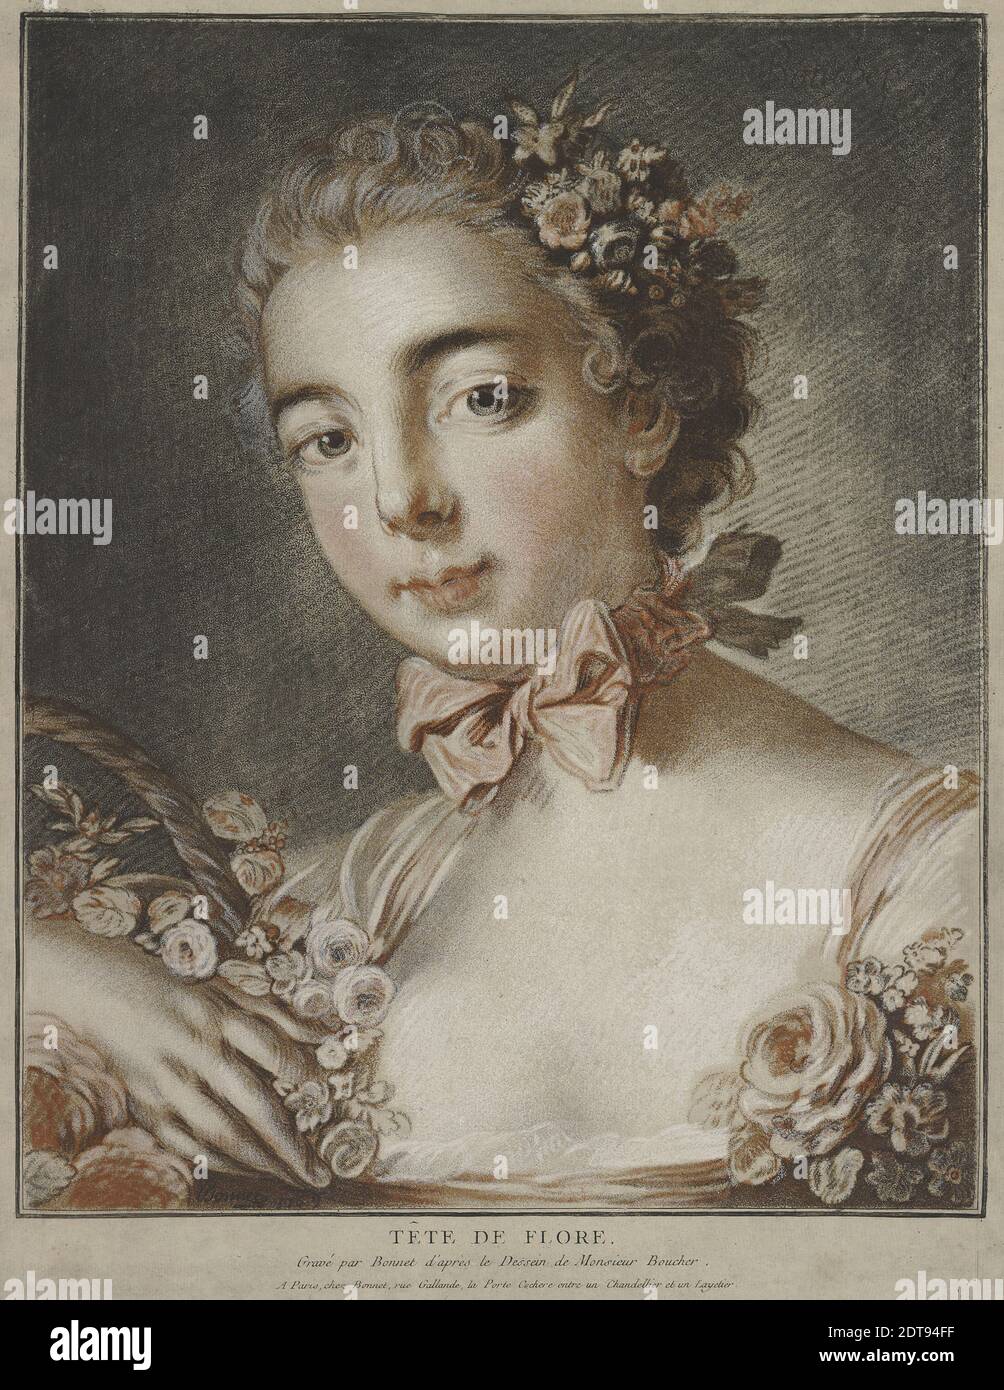 Graveur : Louis-Marin Bonnet, français, 1736–1793, après : François Boucher, français, 1703–1770, tête de flore, gravure pastel, image : 41.5 × 33.5 cm (16 5/16 × 13 3/16 po), on ne sait pas combien d'impressions de cette version de tête de flore, dans les tons de brun et de rouge, ont été imprimées, mais il est extrêmement rare. L'effet est plus subdué que la célèbre image classique imprimée à partir de huit plaques. , fabriqué en France, Français, 18ème siècle, oeuvres sur papier - tirages Banque D'Images